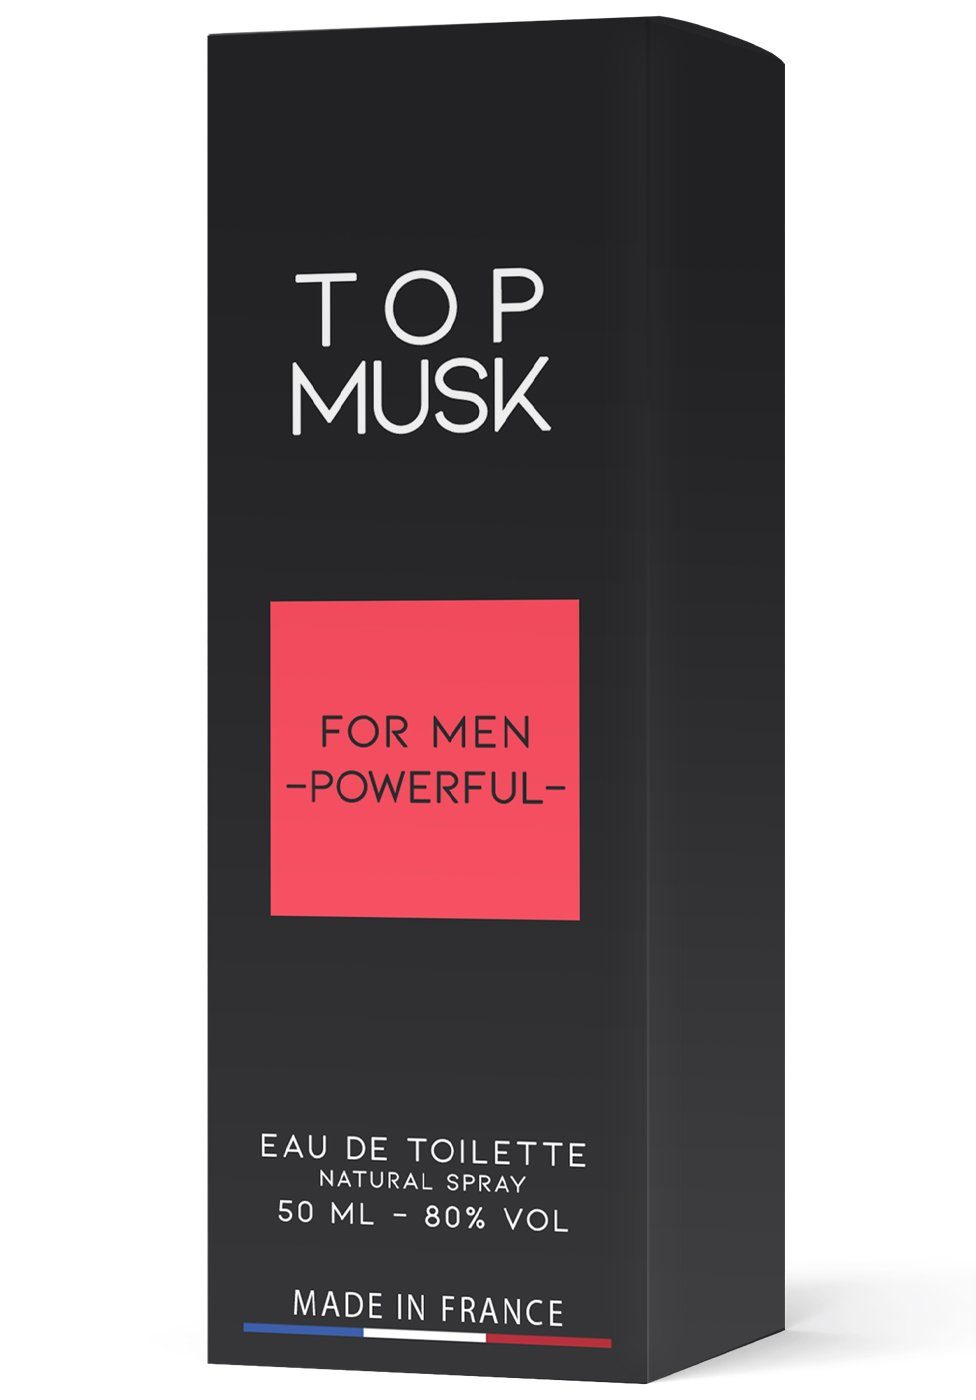 Ruf Eau Musk Top Toilette Men Parfum de for